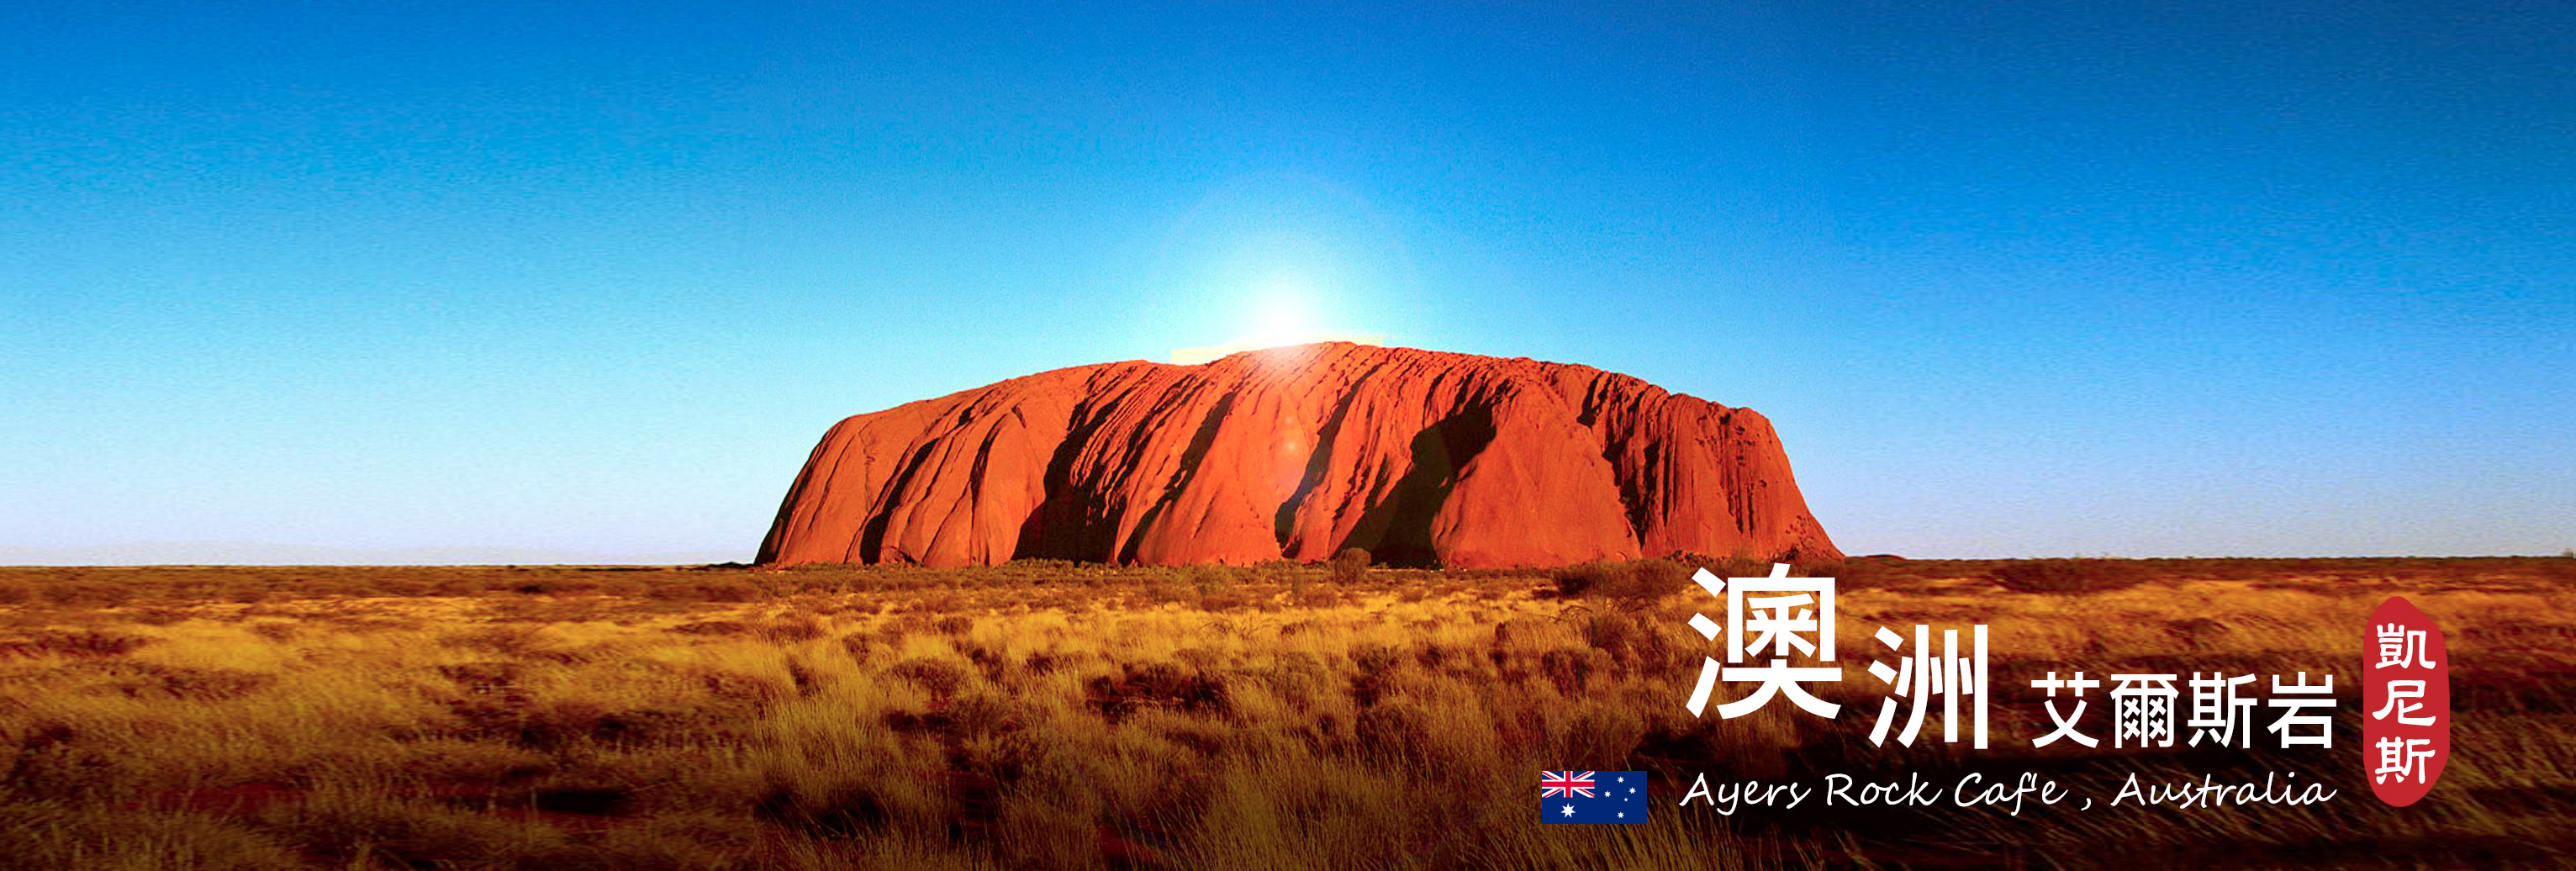 澳洲旅游推荐,澳洲旅游签证,专办澳洲旅游,澳洲